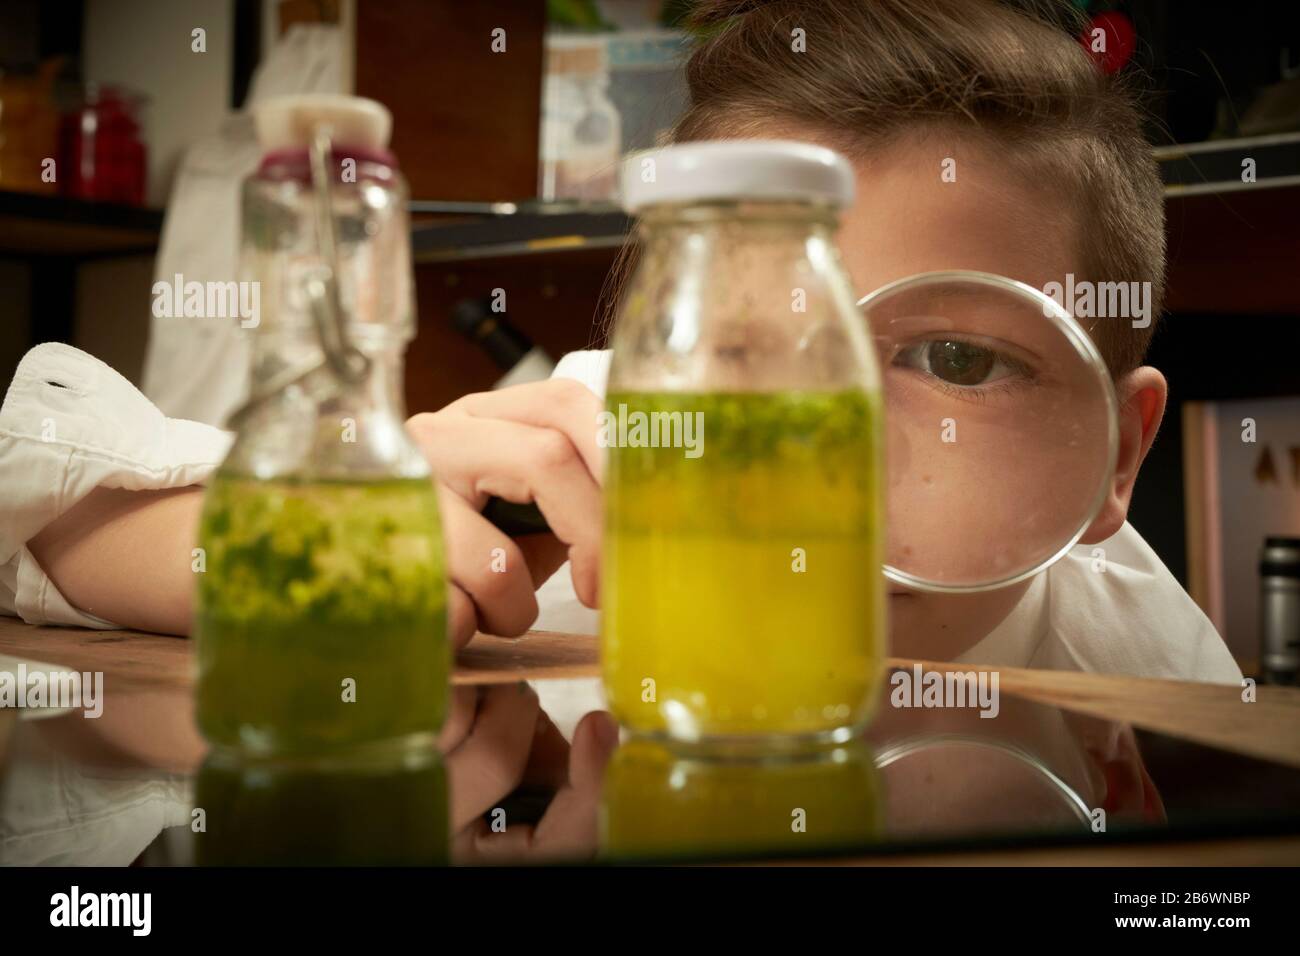 Enfants enquêtant sur la nourriture. Un garçon fait de l'huile imprégnée d'herbes. Apprentissage selon le principe de la pédagogie Reggio, compréhension et découverte ludiques. Allemagne Banque D'Images